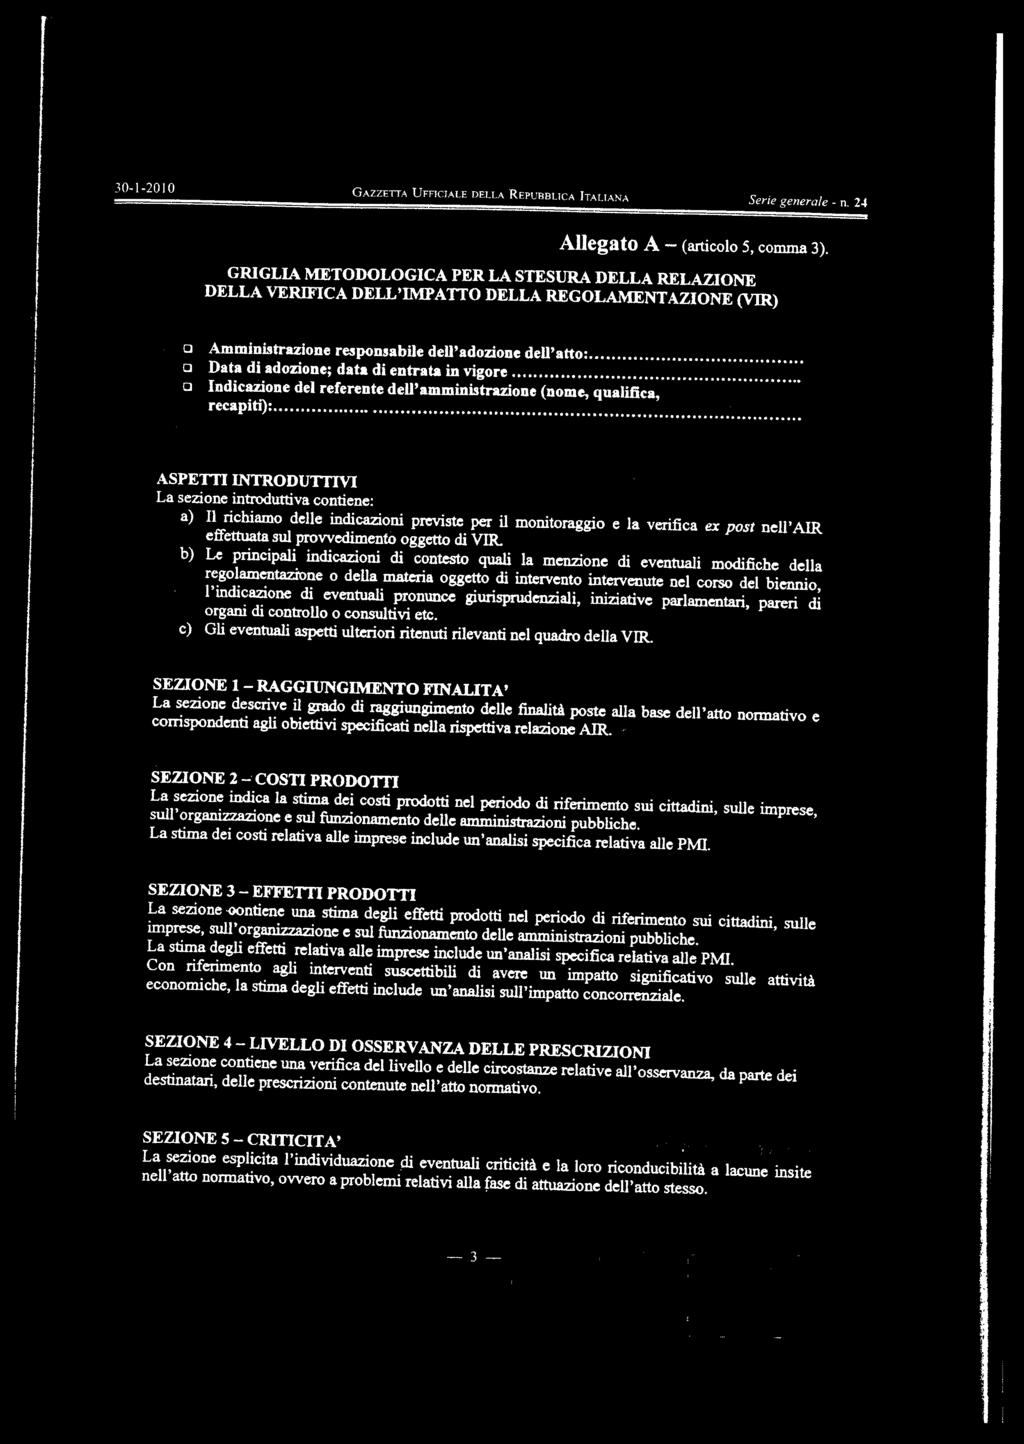 30-1-2010 GAZzErrA UFFICIALE DEI LA REPUEBUCA ITALIANA Sri gnral n. 23 Allgato A (articolo 5, comma 3).